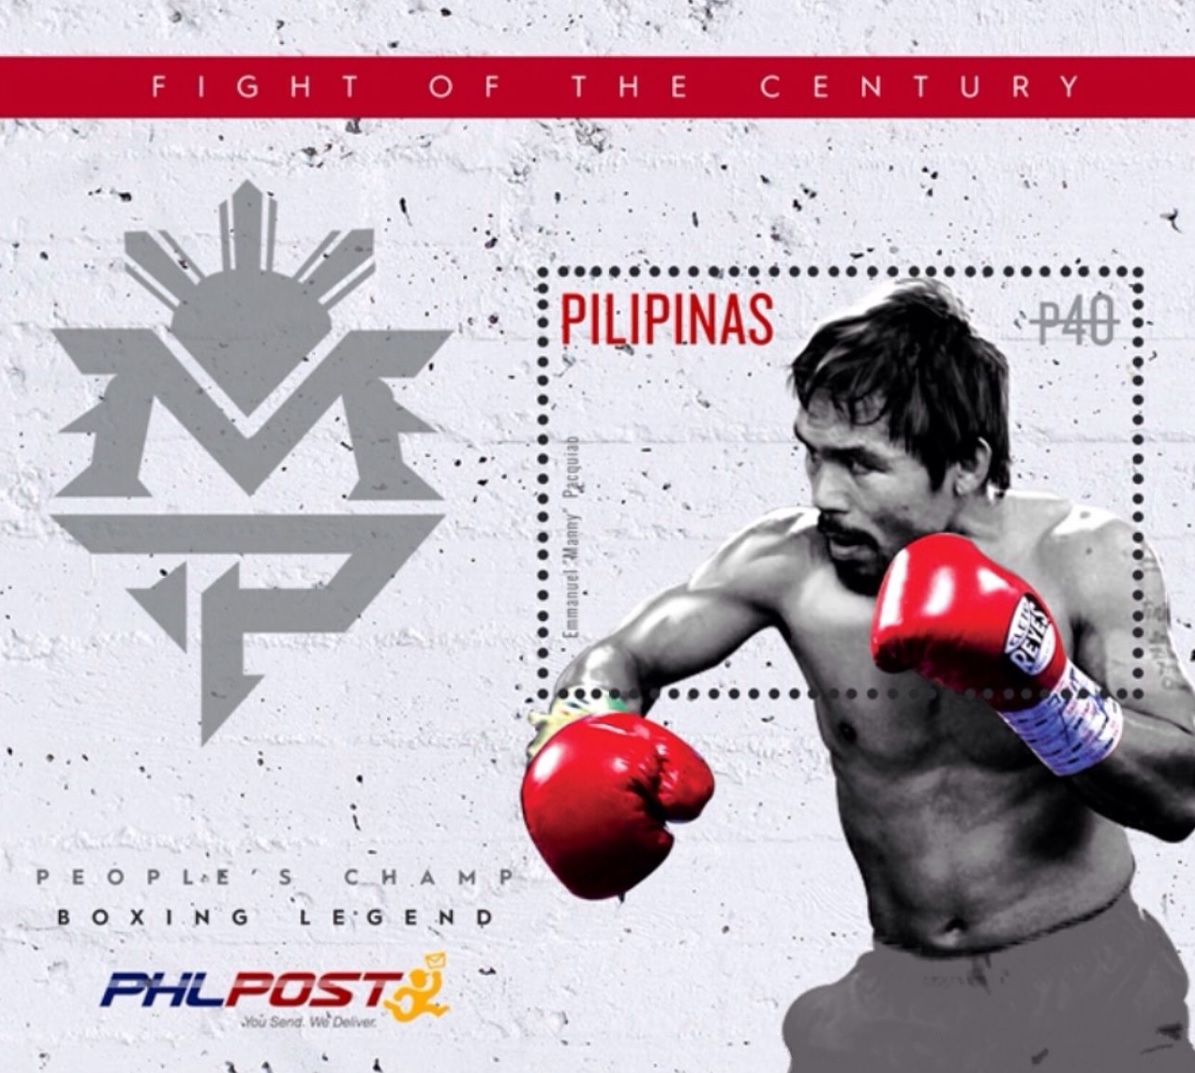 図４．切手のモデルとなったパッキャオ https://www.en.wikipedia.org/wiki/Manny_Pacquiao#/media/File:Manny_Pacquiao_2015_stampsheet_of_the_Philippines.jpg